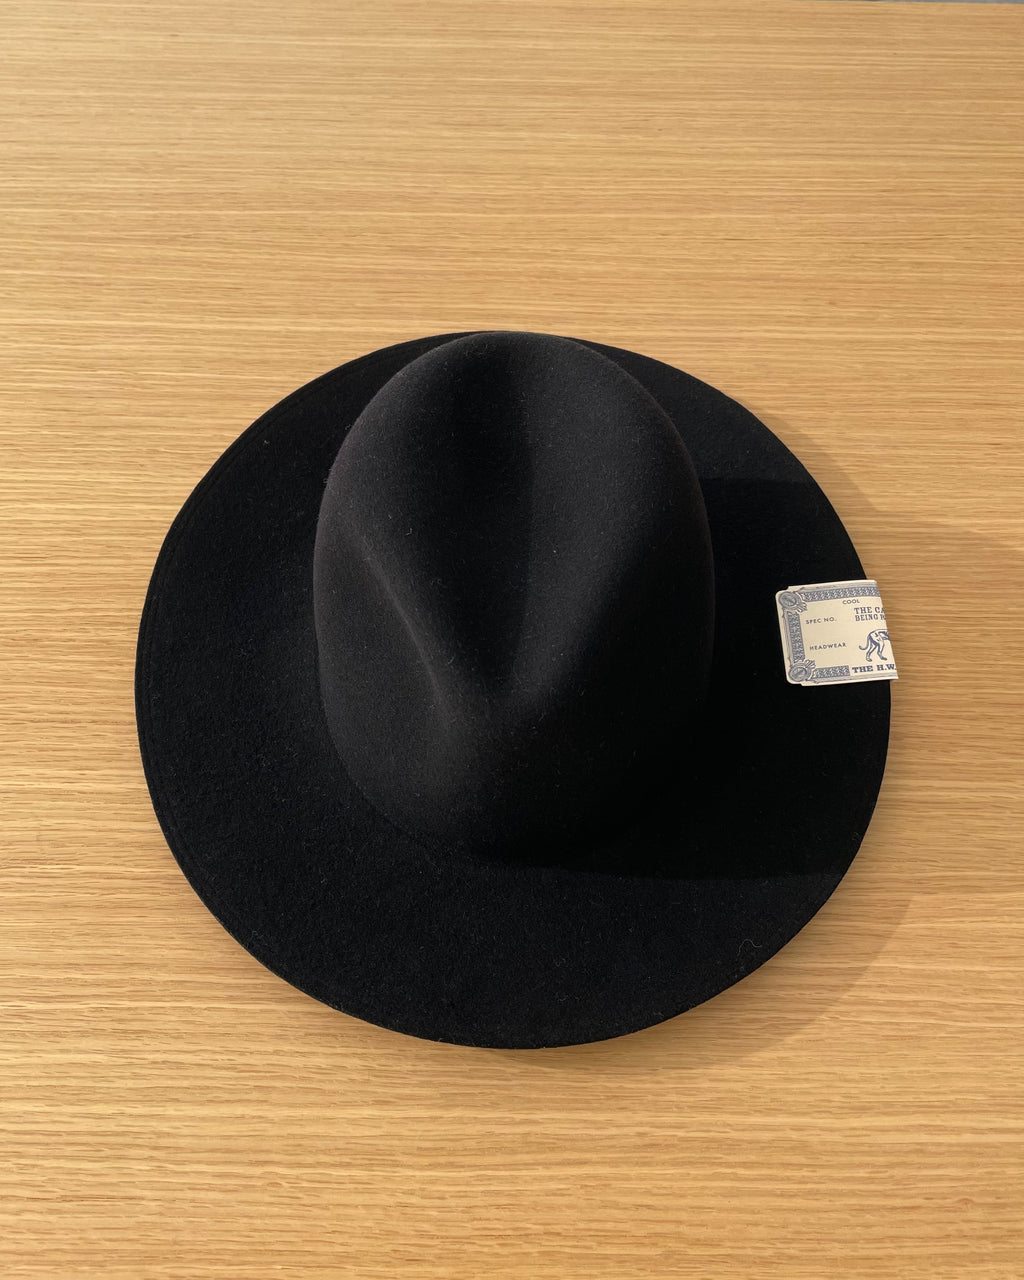 H. W. Dog Travelers Hat in Black at TEMPO Design Store SF CA – Tempo